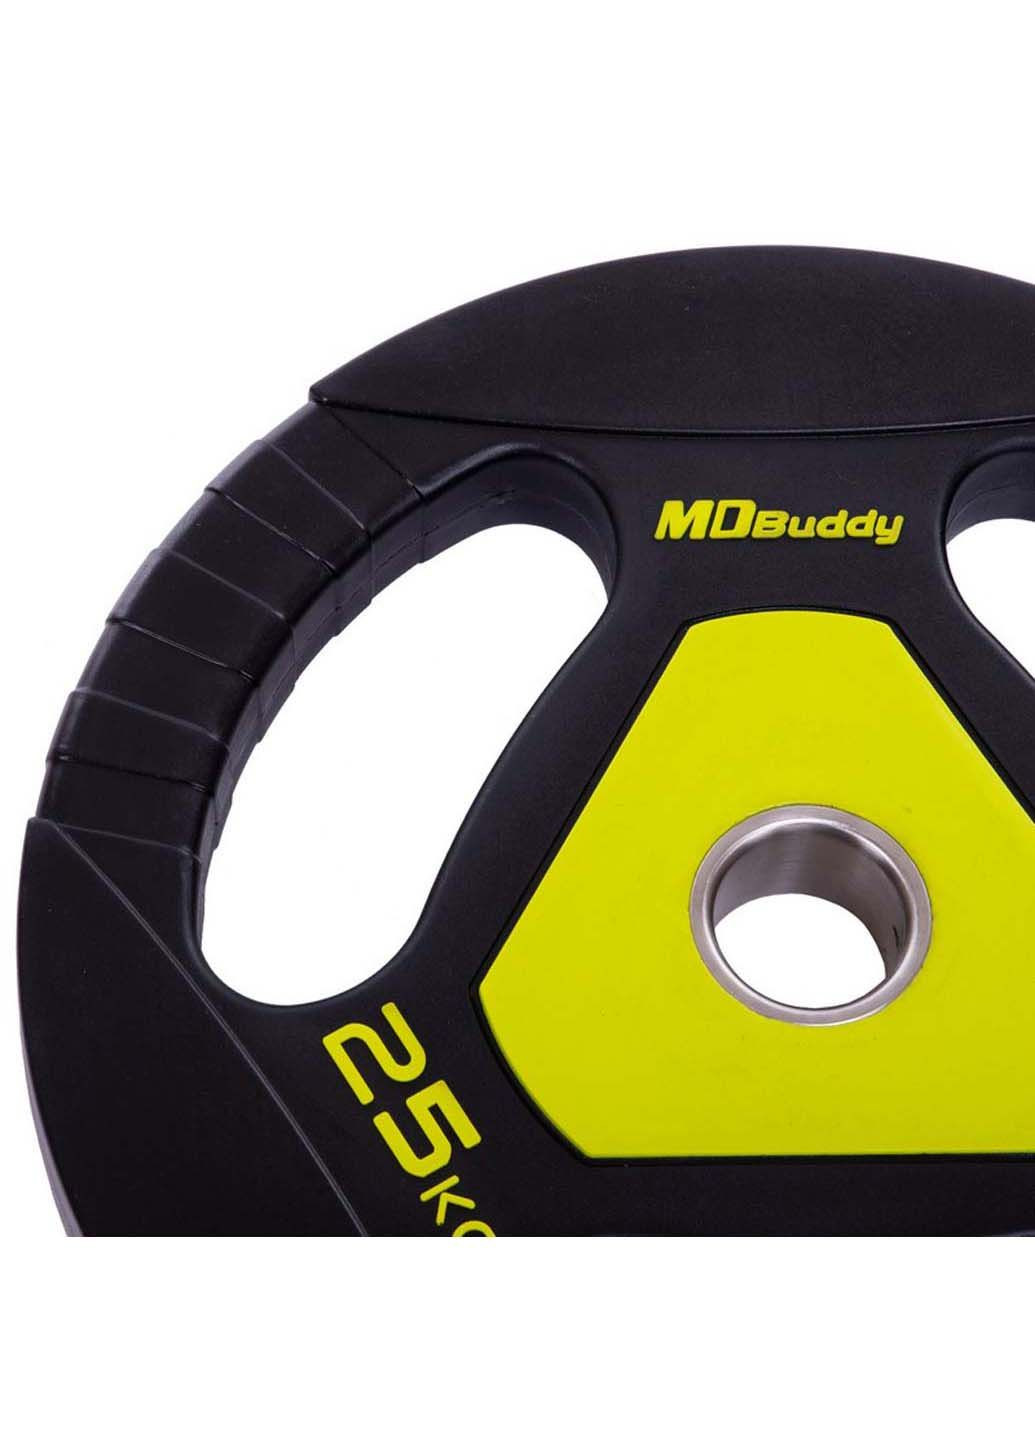 Блины диски полиуретановые TA-2677 25 кг MDbuddy (286043687)